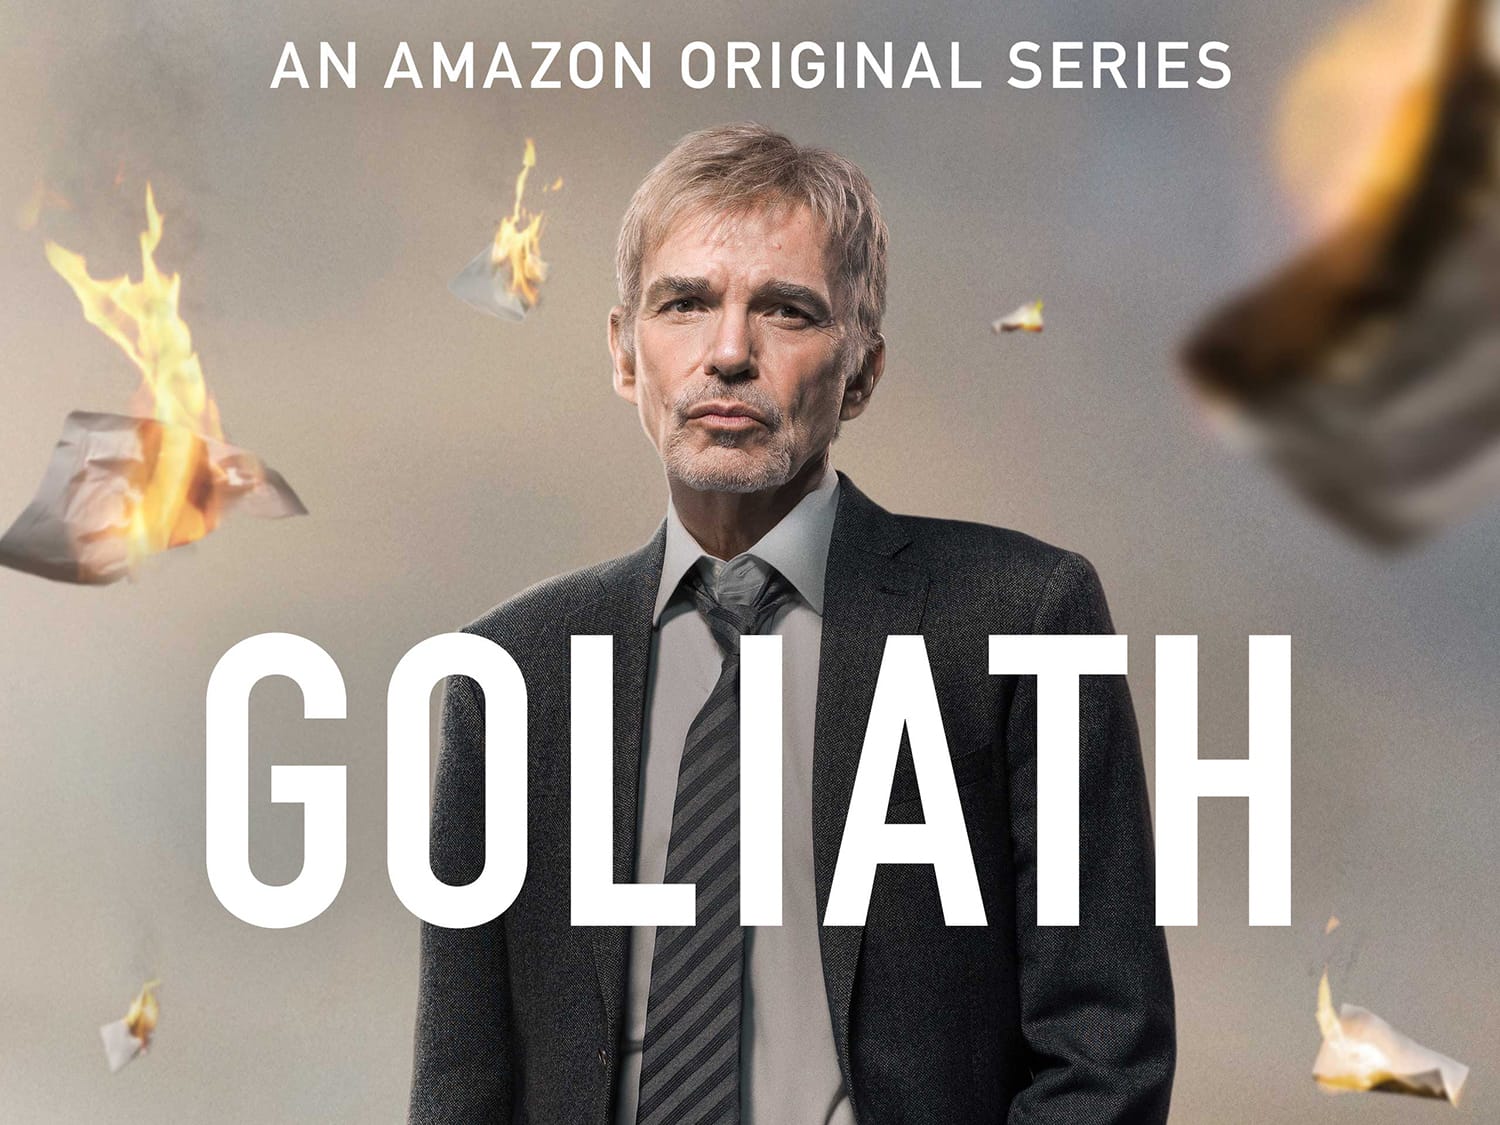 Die Amazon-Original-Serie "Goliath" ist ebenfalls ein Gerichtsdrama und seit November 2016 auf dem Video-Streaming-Service zu sehen.